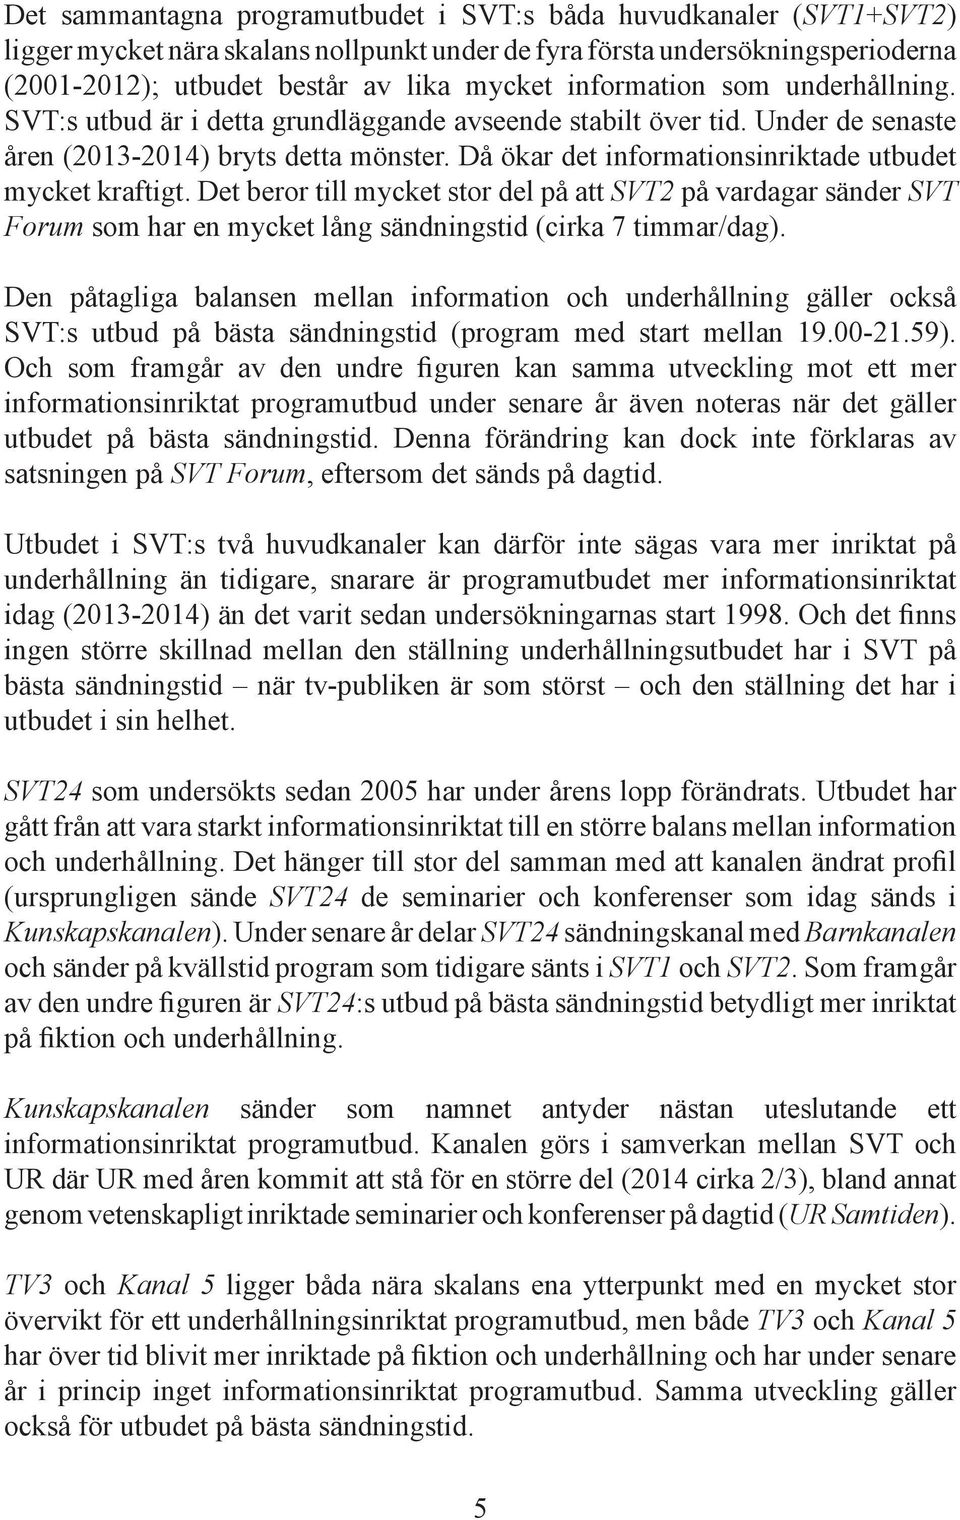 Då ökar det informationsinriktade utbudet mycket kraftigt. Det beror till mycket stor del på att SVT2 på vardagar sänder SVT Forum som har en mycket lång sändningstid (cirka 7 timmar/dag).